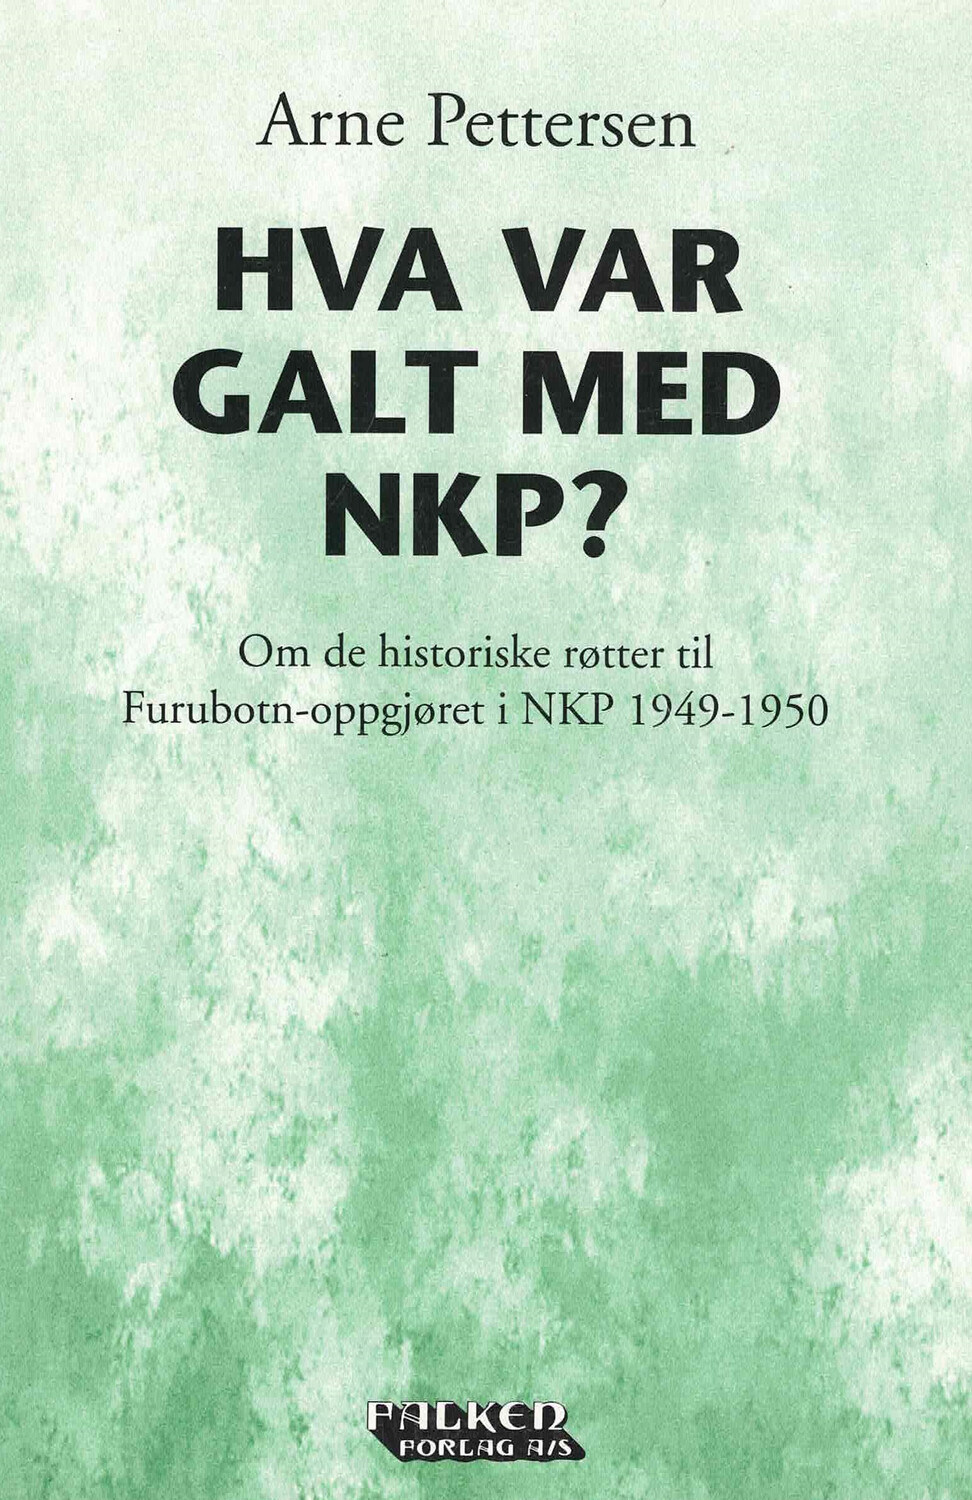 Hva var galt med NKP?